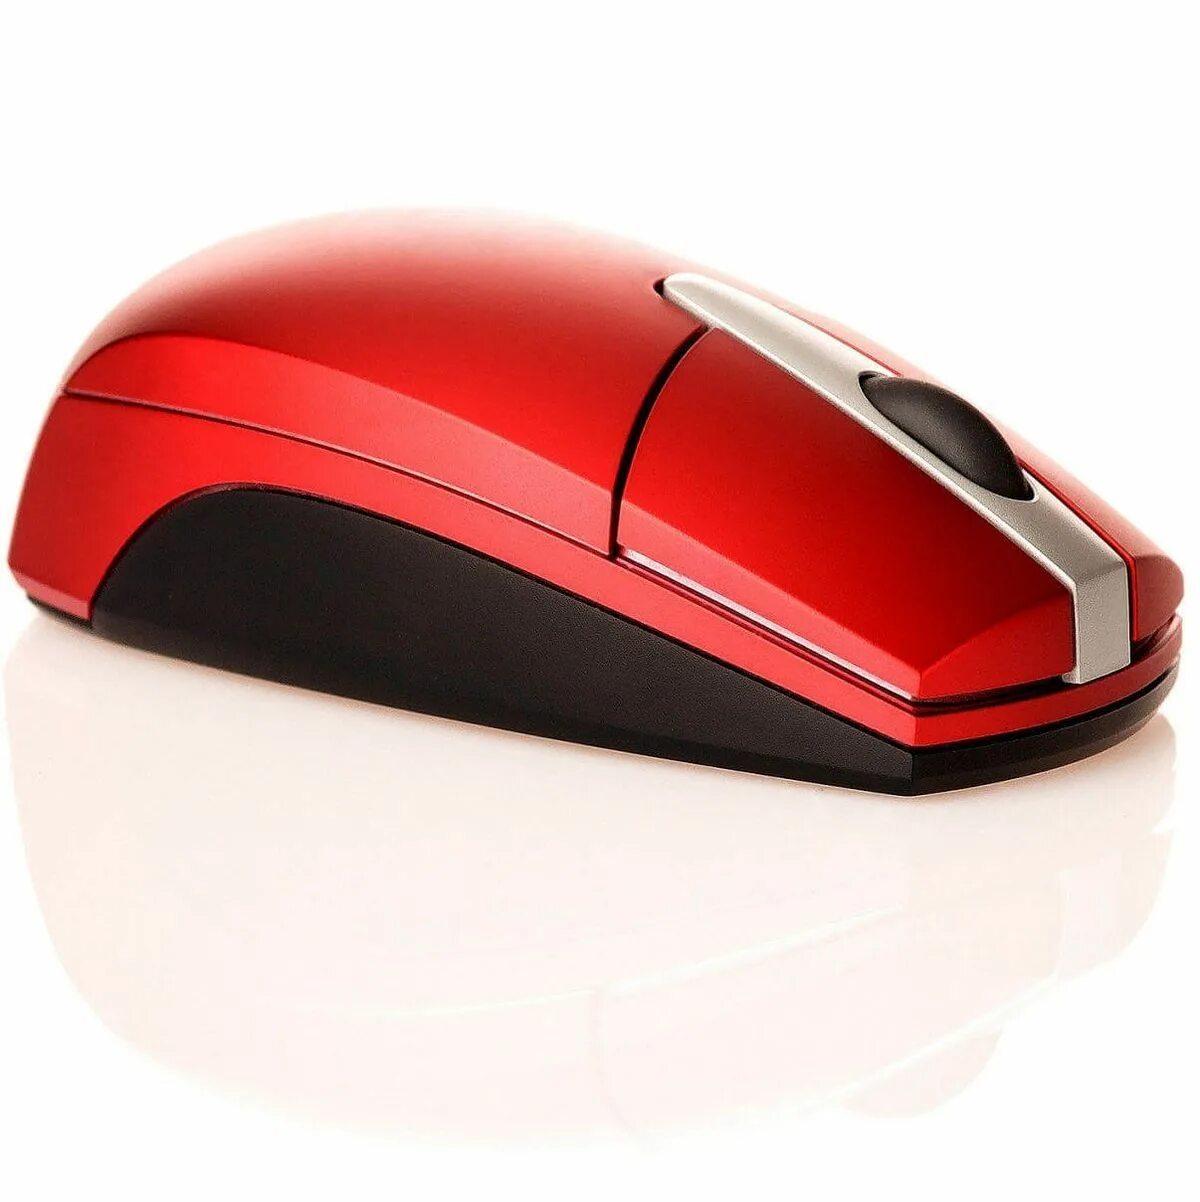 Browser mousepan png vtex c. Мышка компьютерная. Беспроводная мышь красная. Мышки для дизайнера комп. Изображение компьютерной мыши.